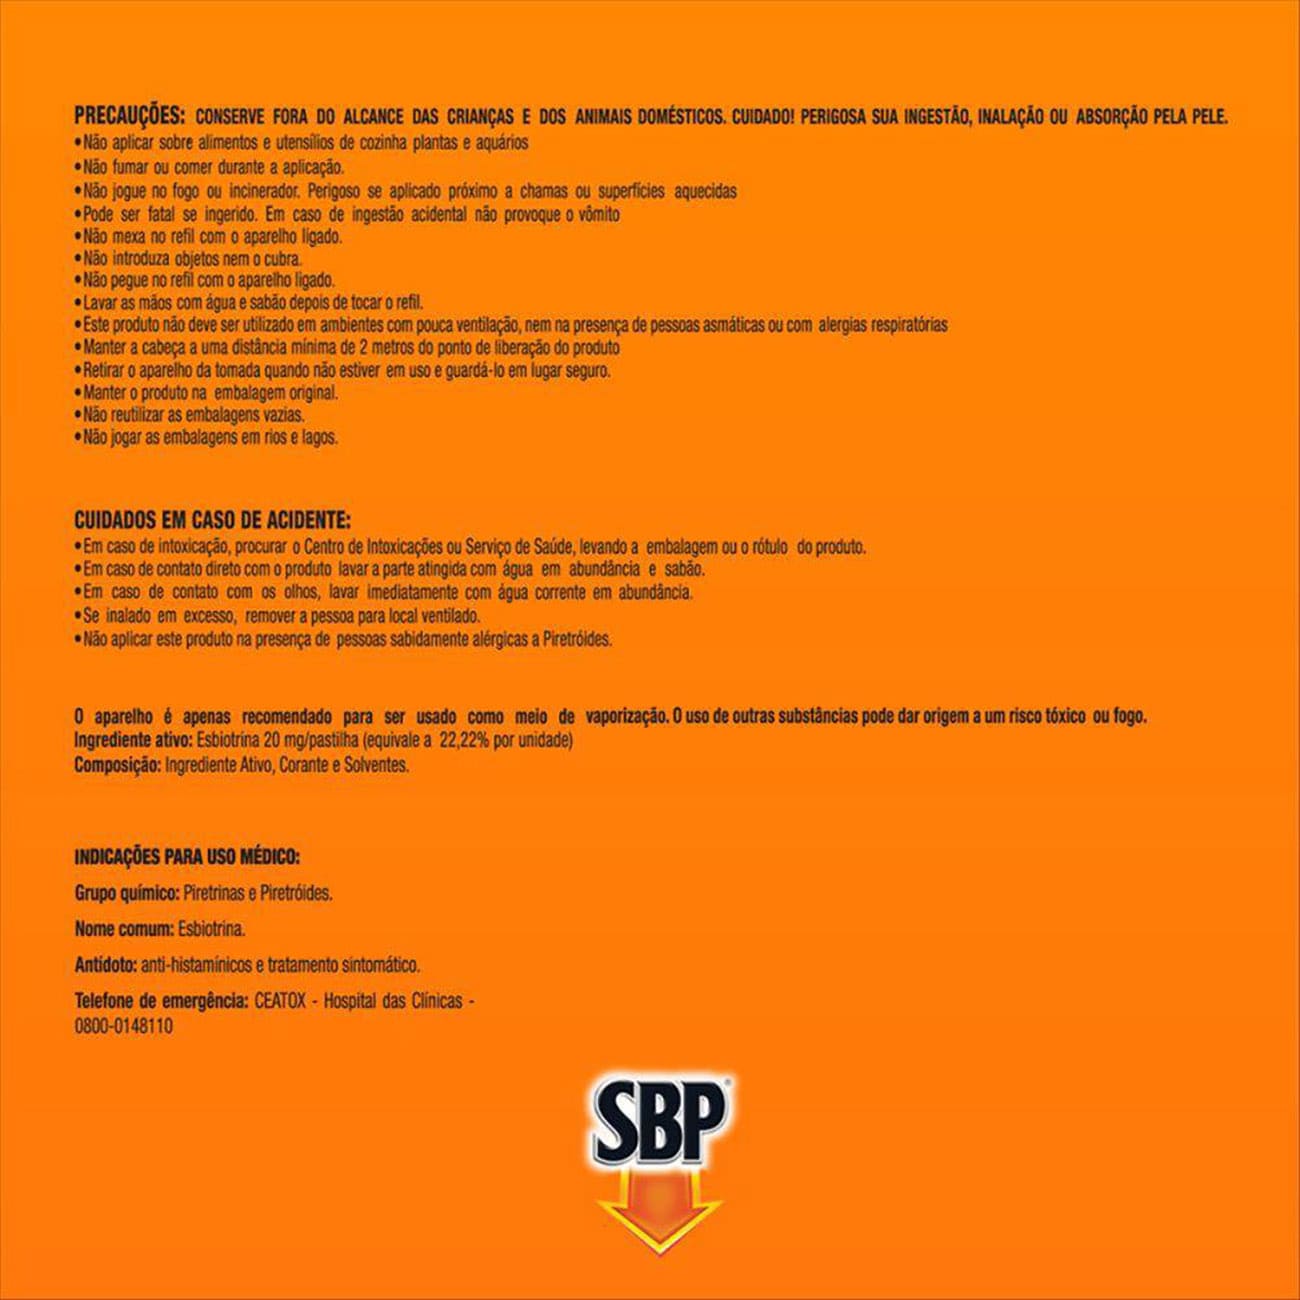 Repelente Eltrico Pastilha SBP Refil Leve 12 Pague 10 pastilhas